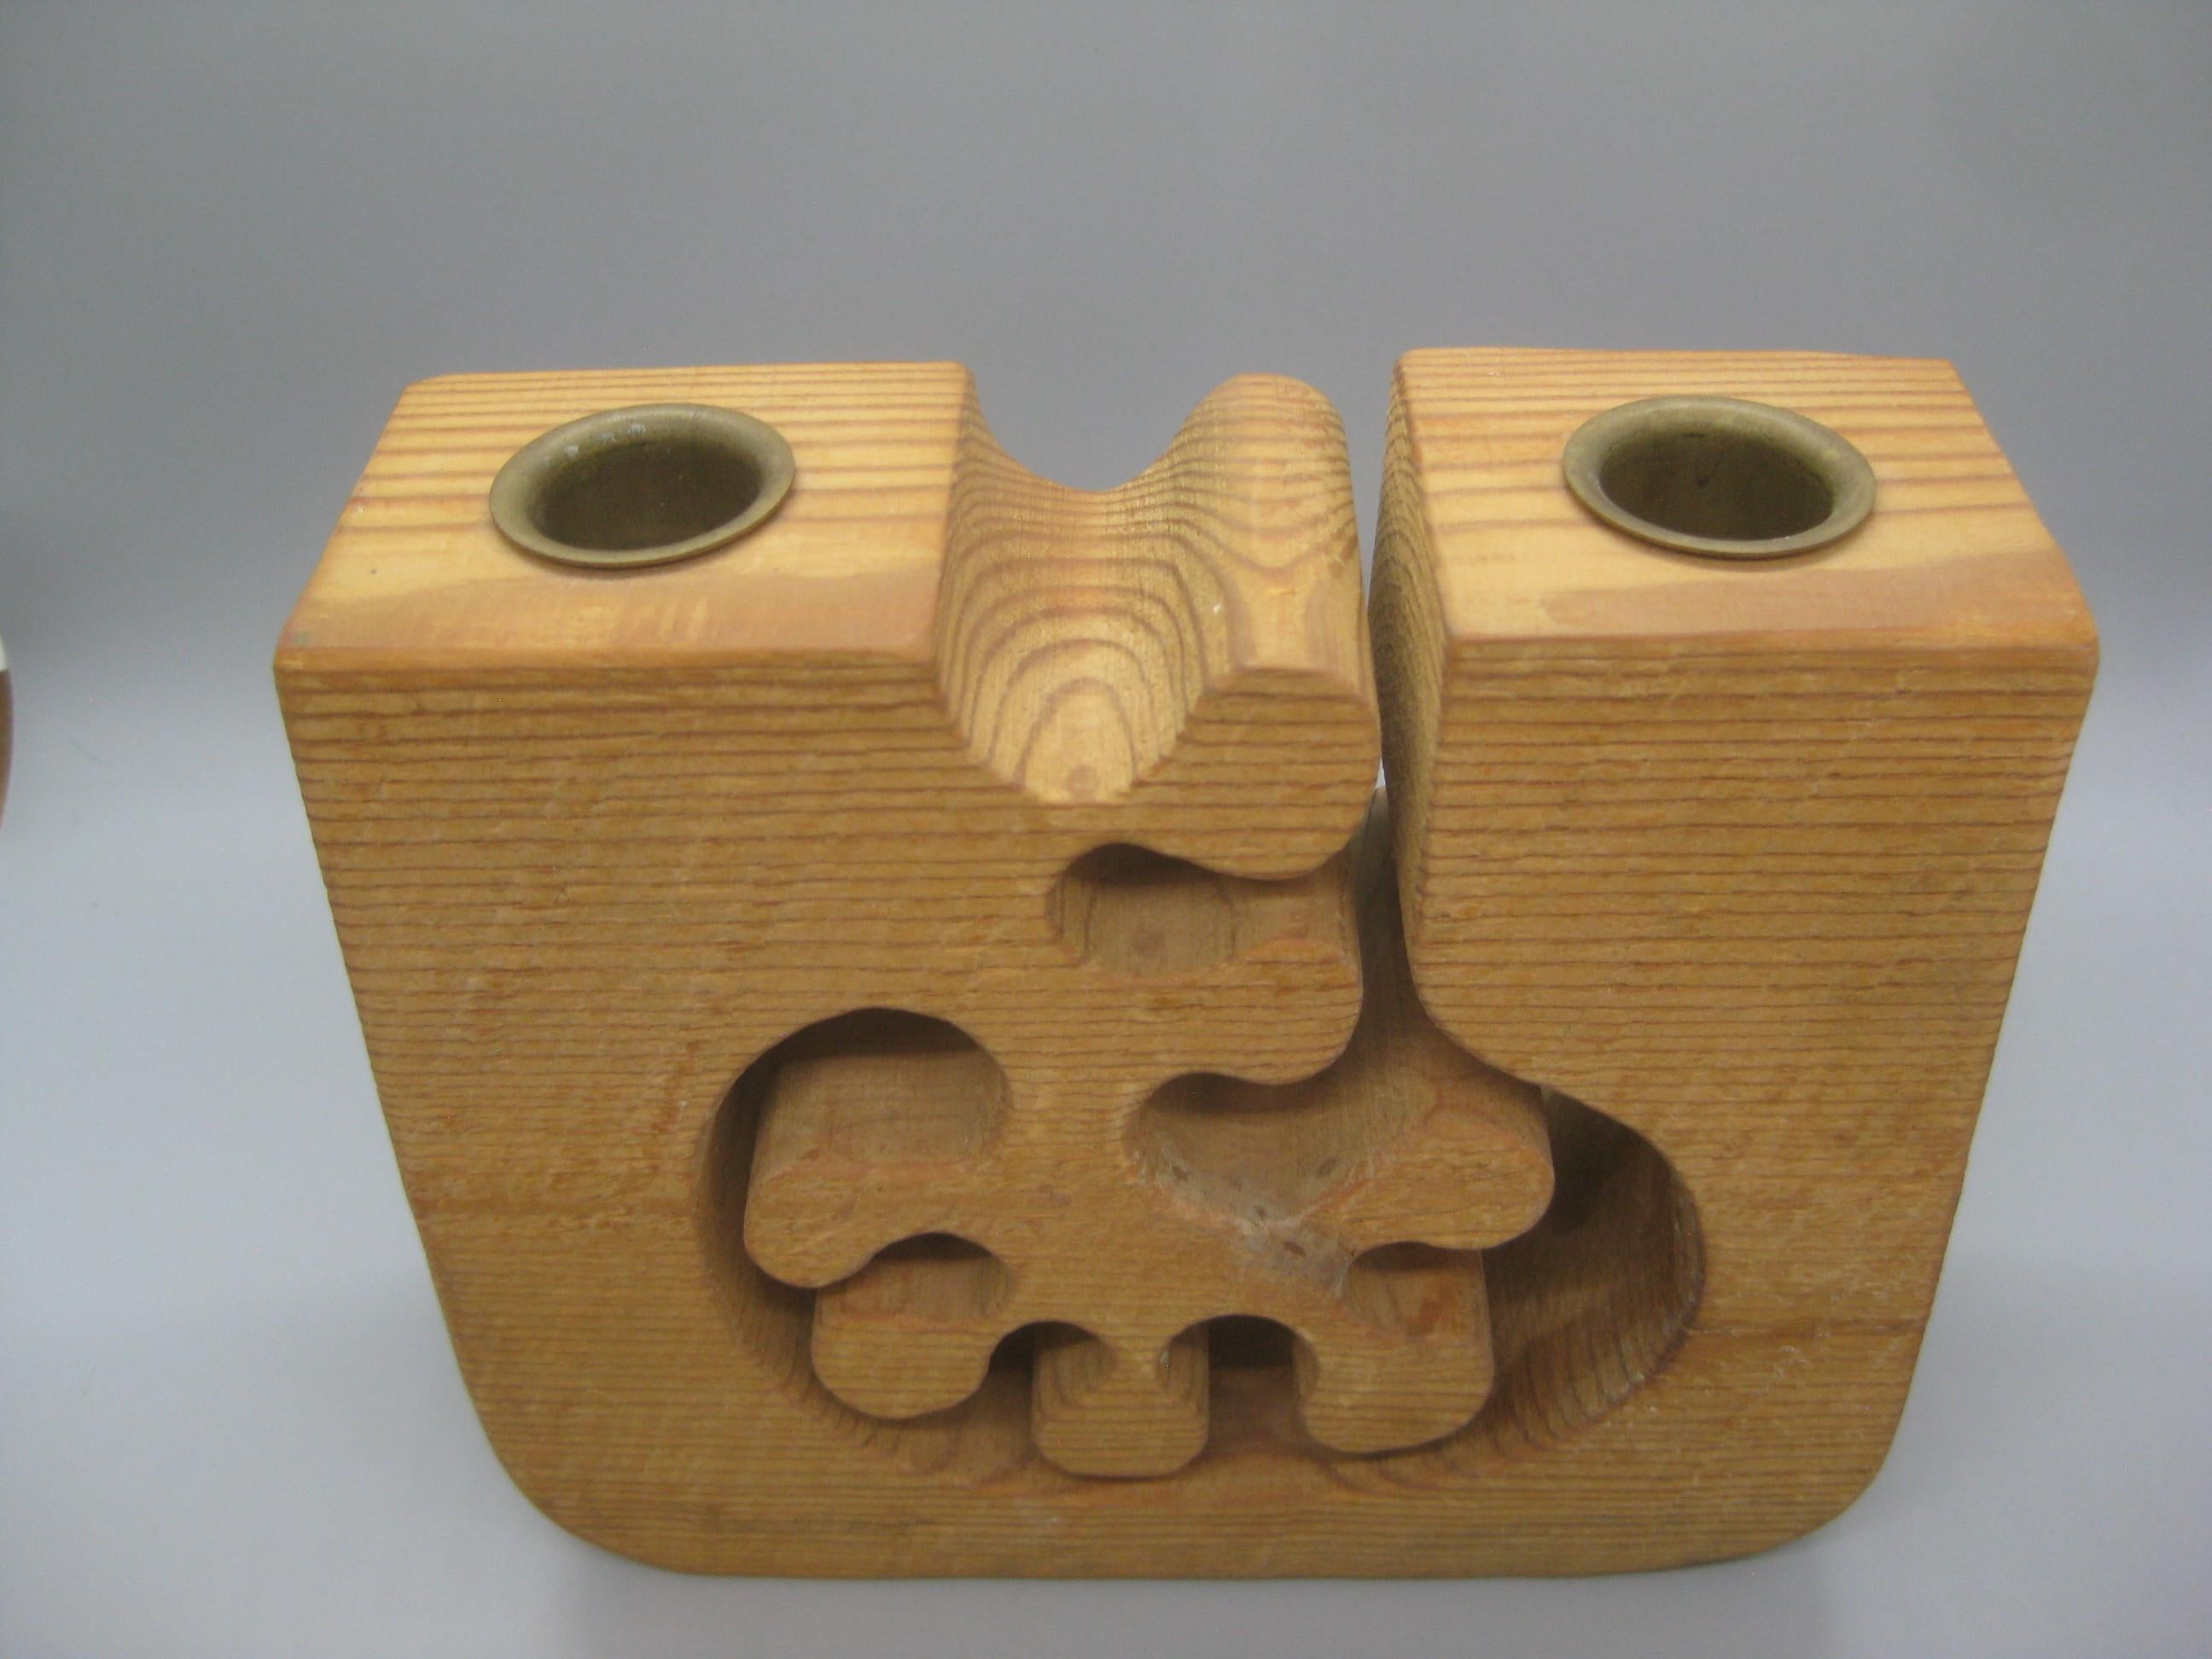 1979 Gunnar Kanevad Design Hand Carved Organic Wood Candle Holder Carving Sweden For Sale 1